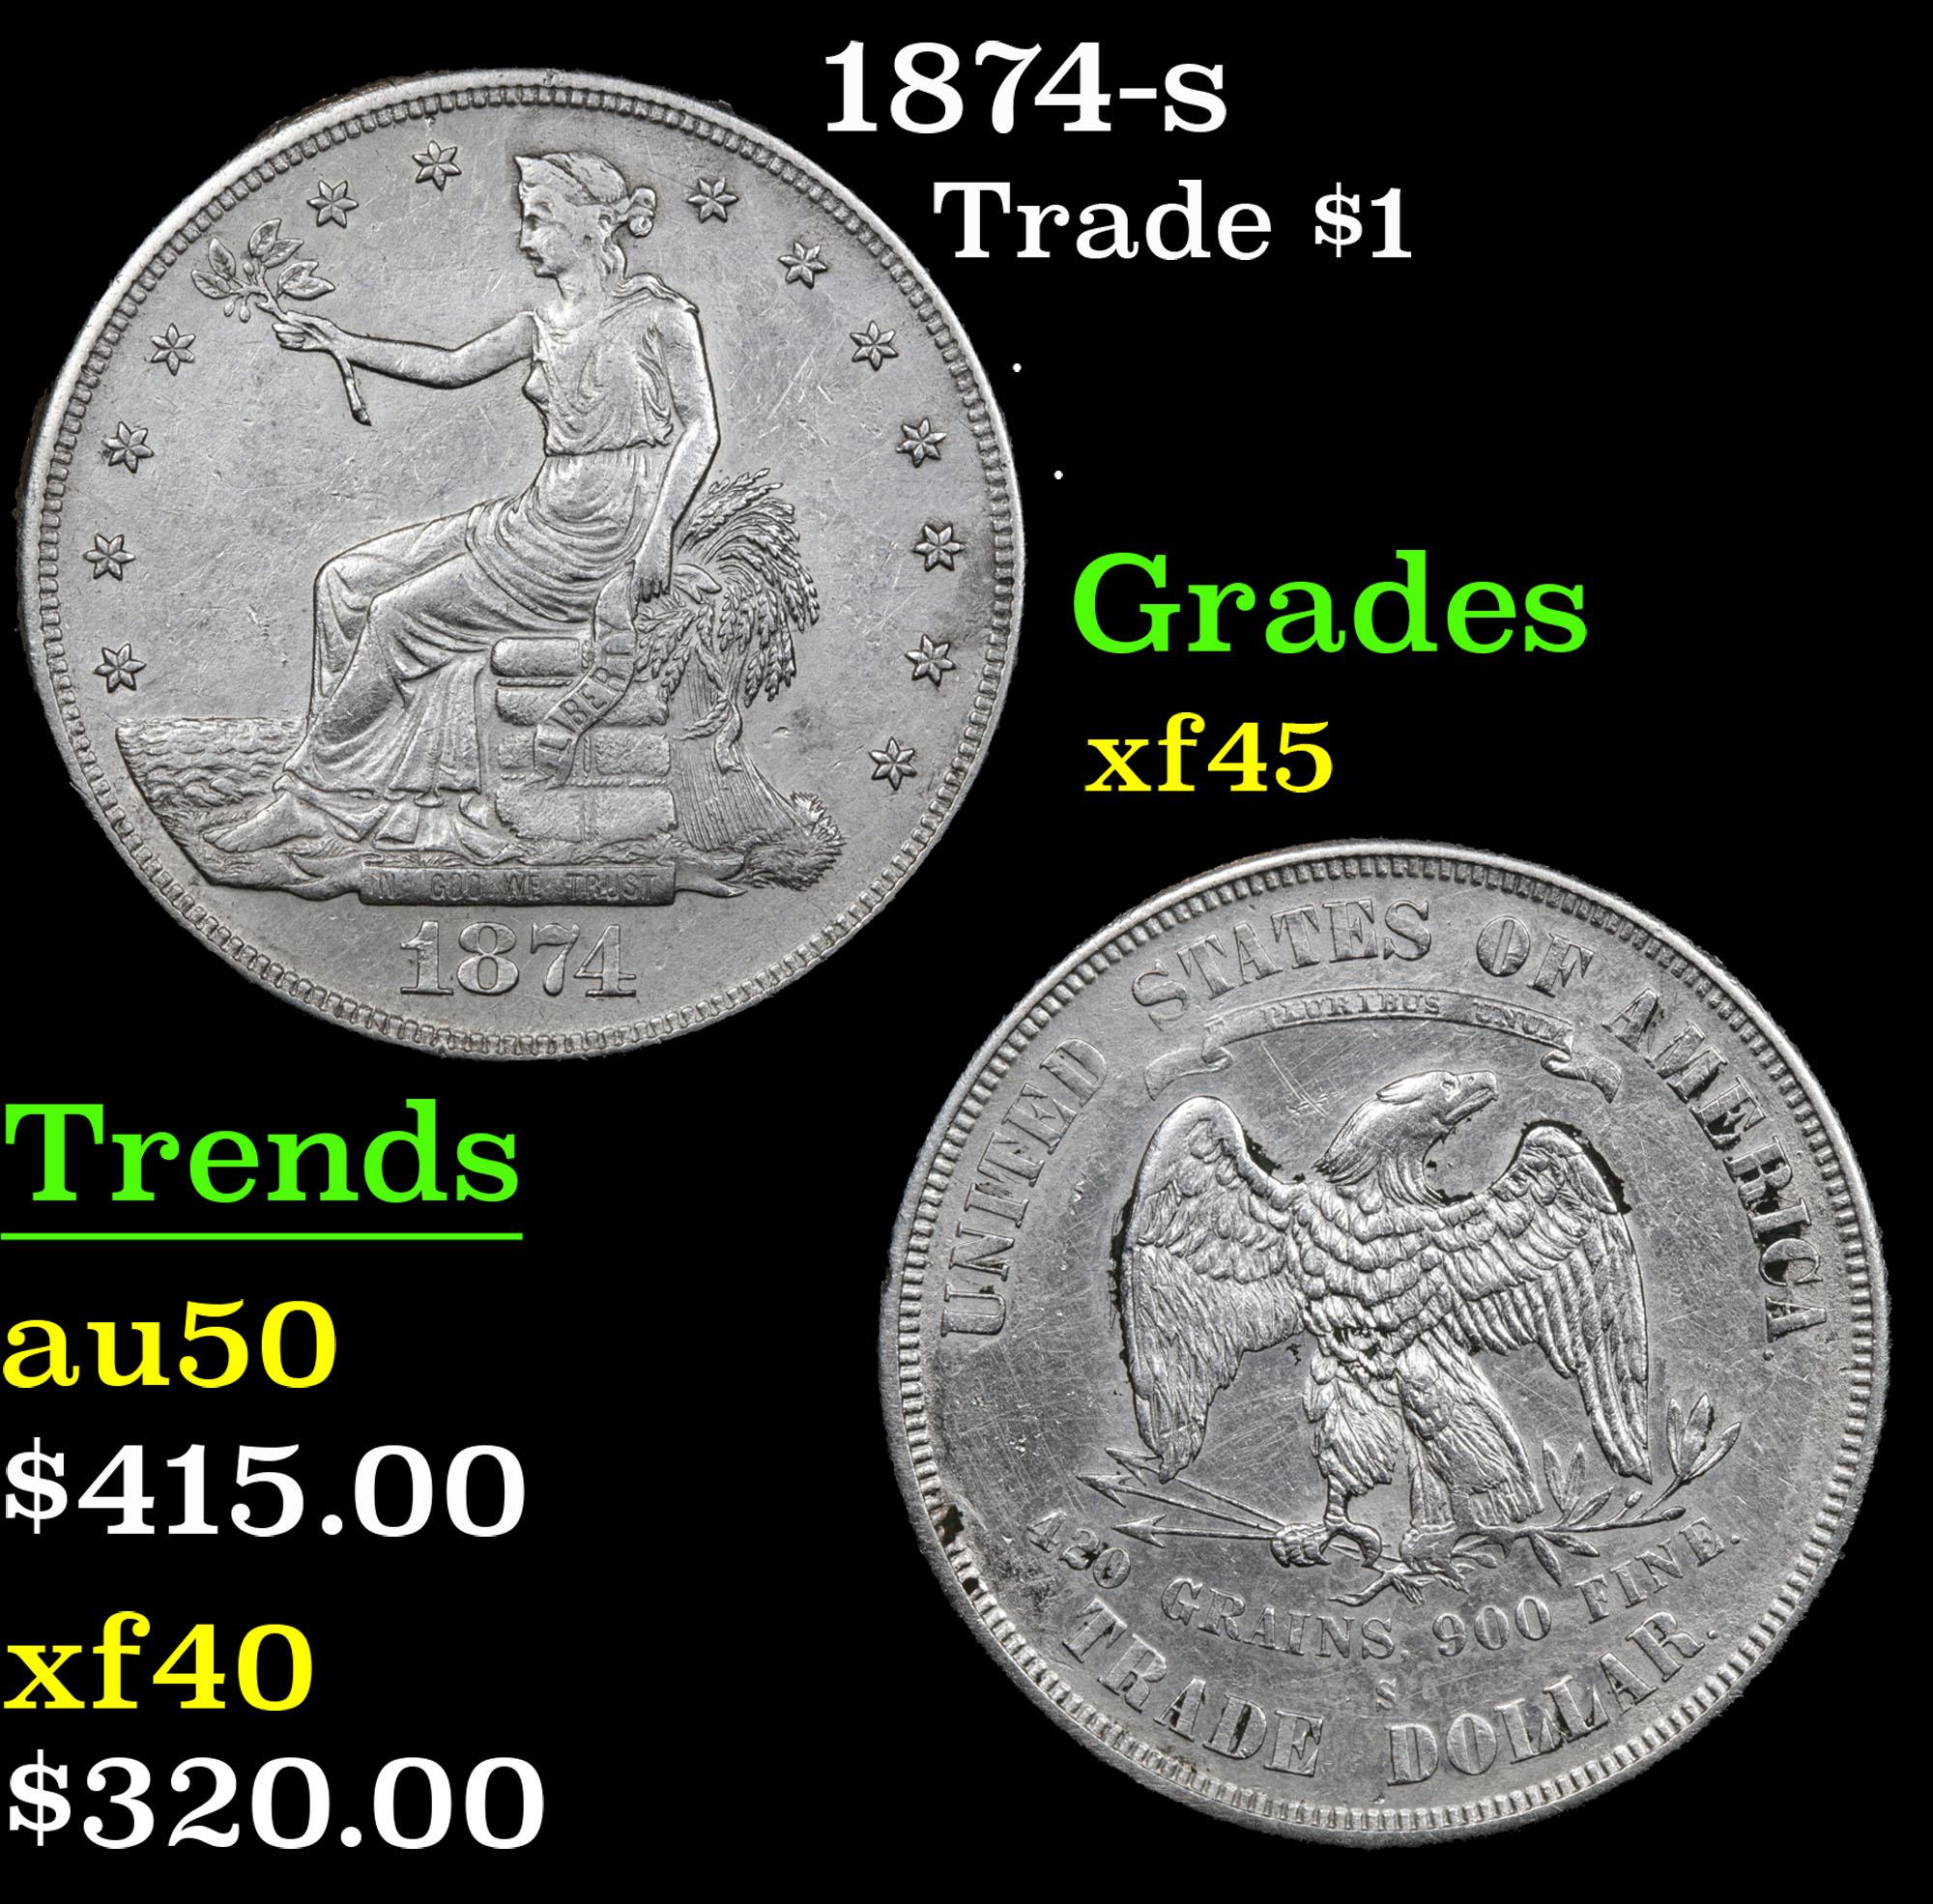 1874-s Trade Dollar $1 Grades xf+